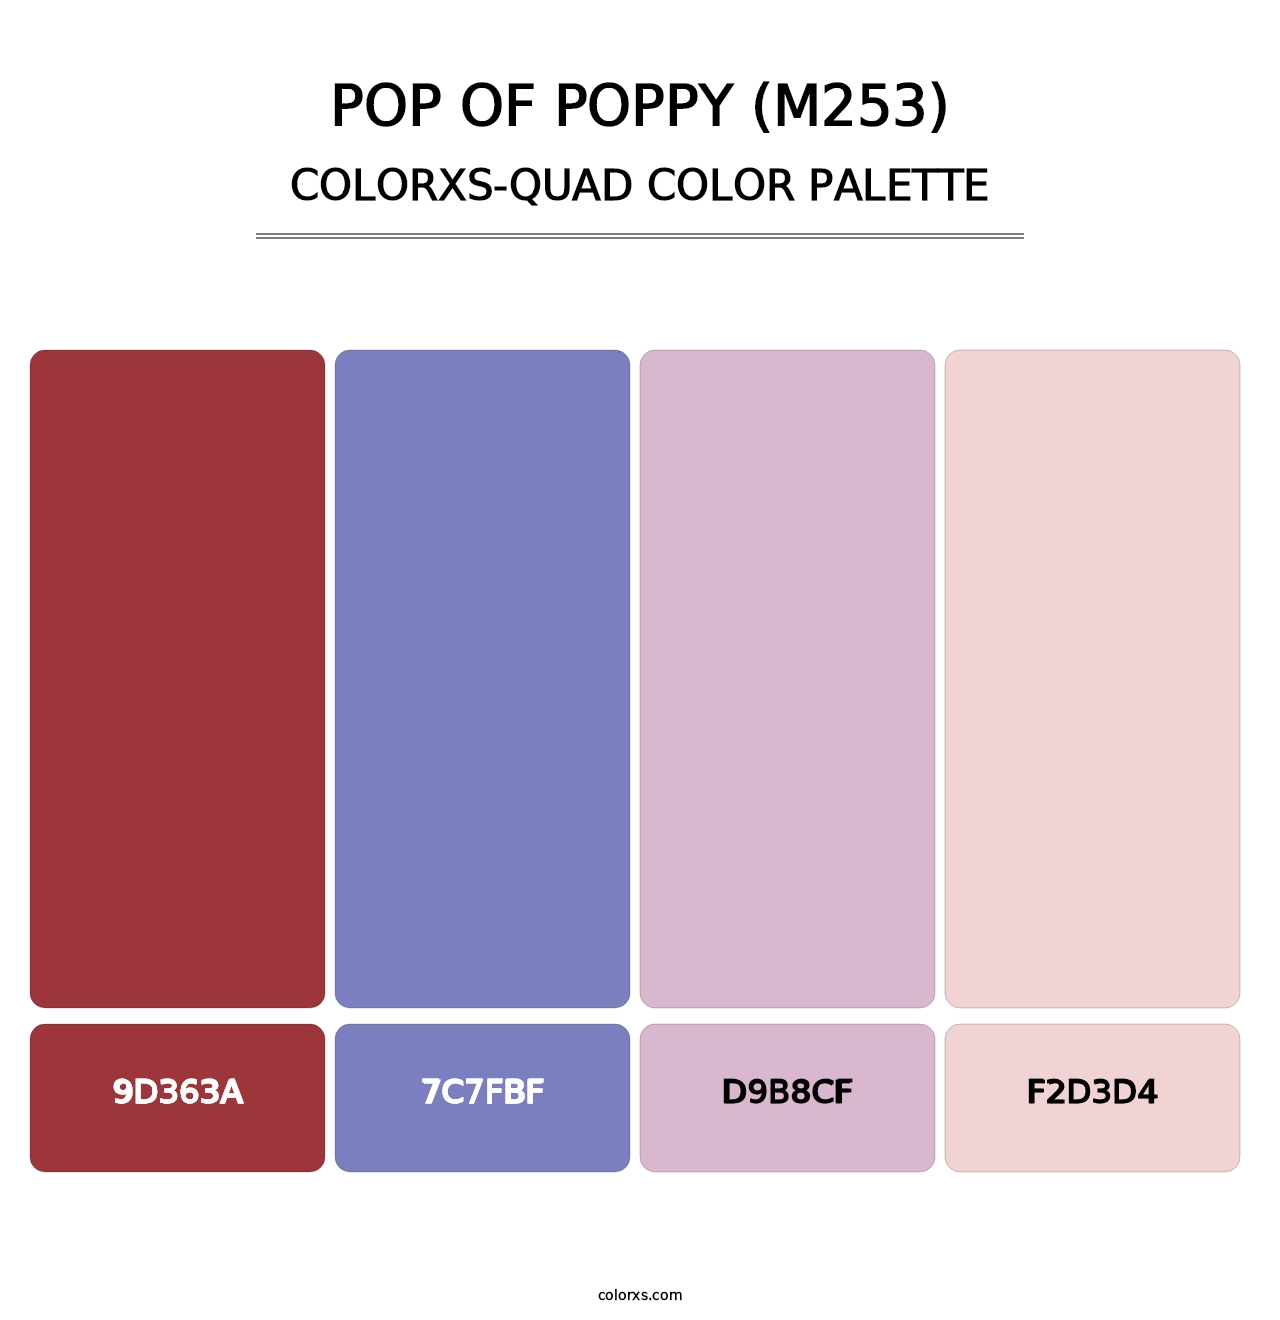 Pop of Poppy (M253) - Colorxs Quad Palette